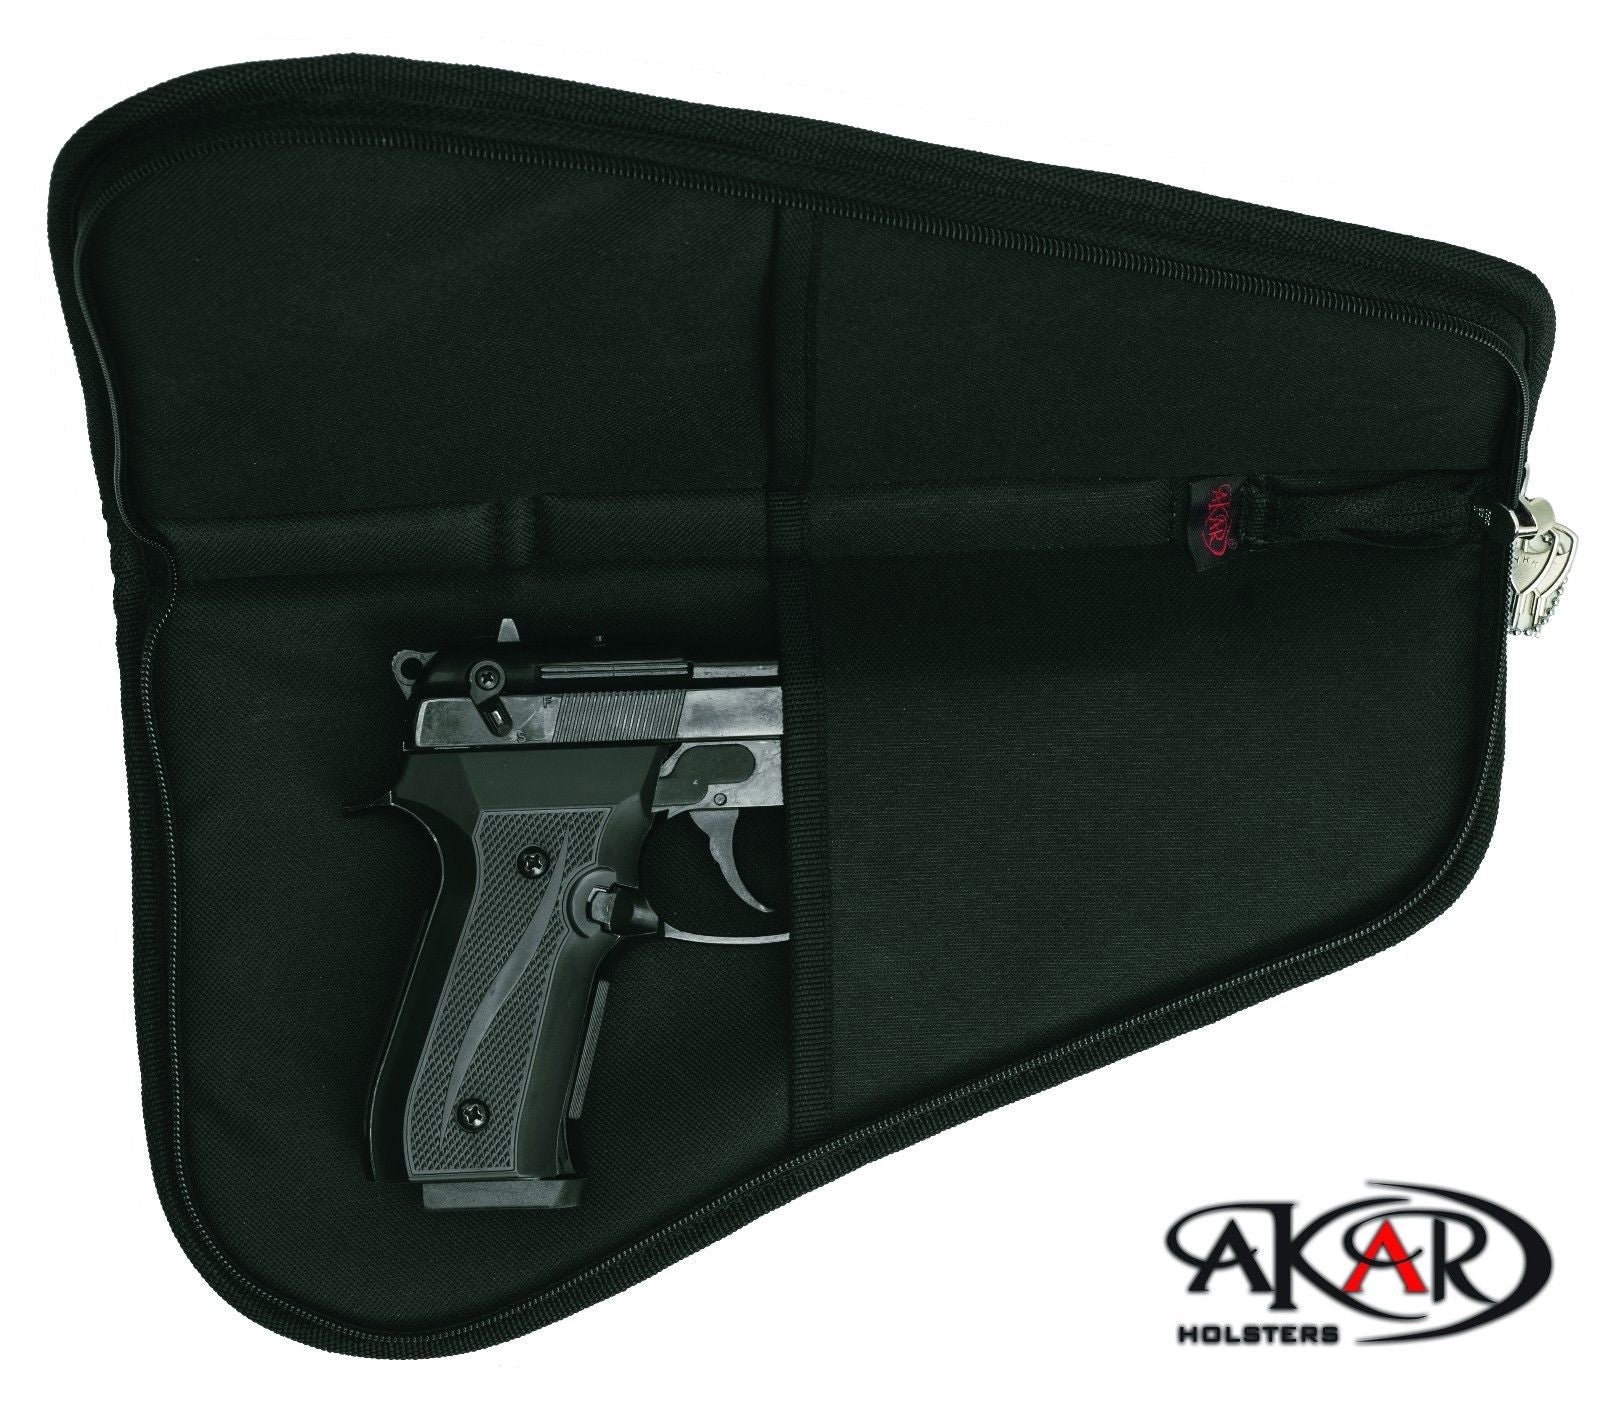 Akar Pistol Rug Case Medium Lock Included Myholster